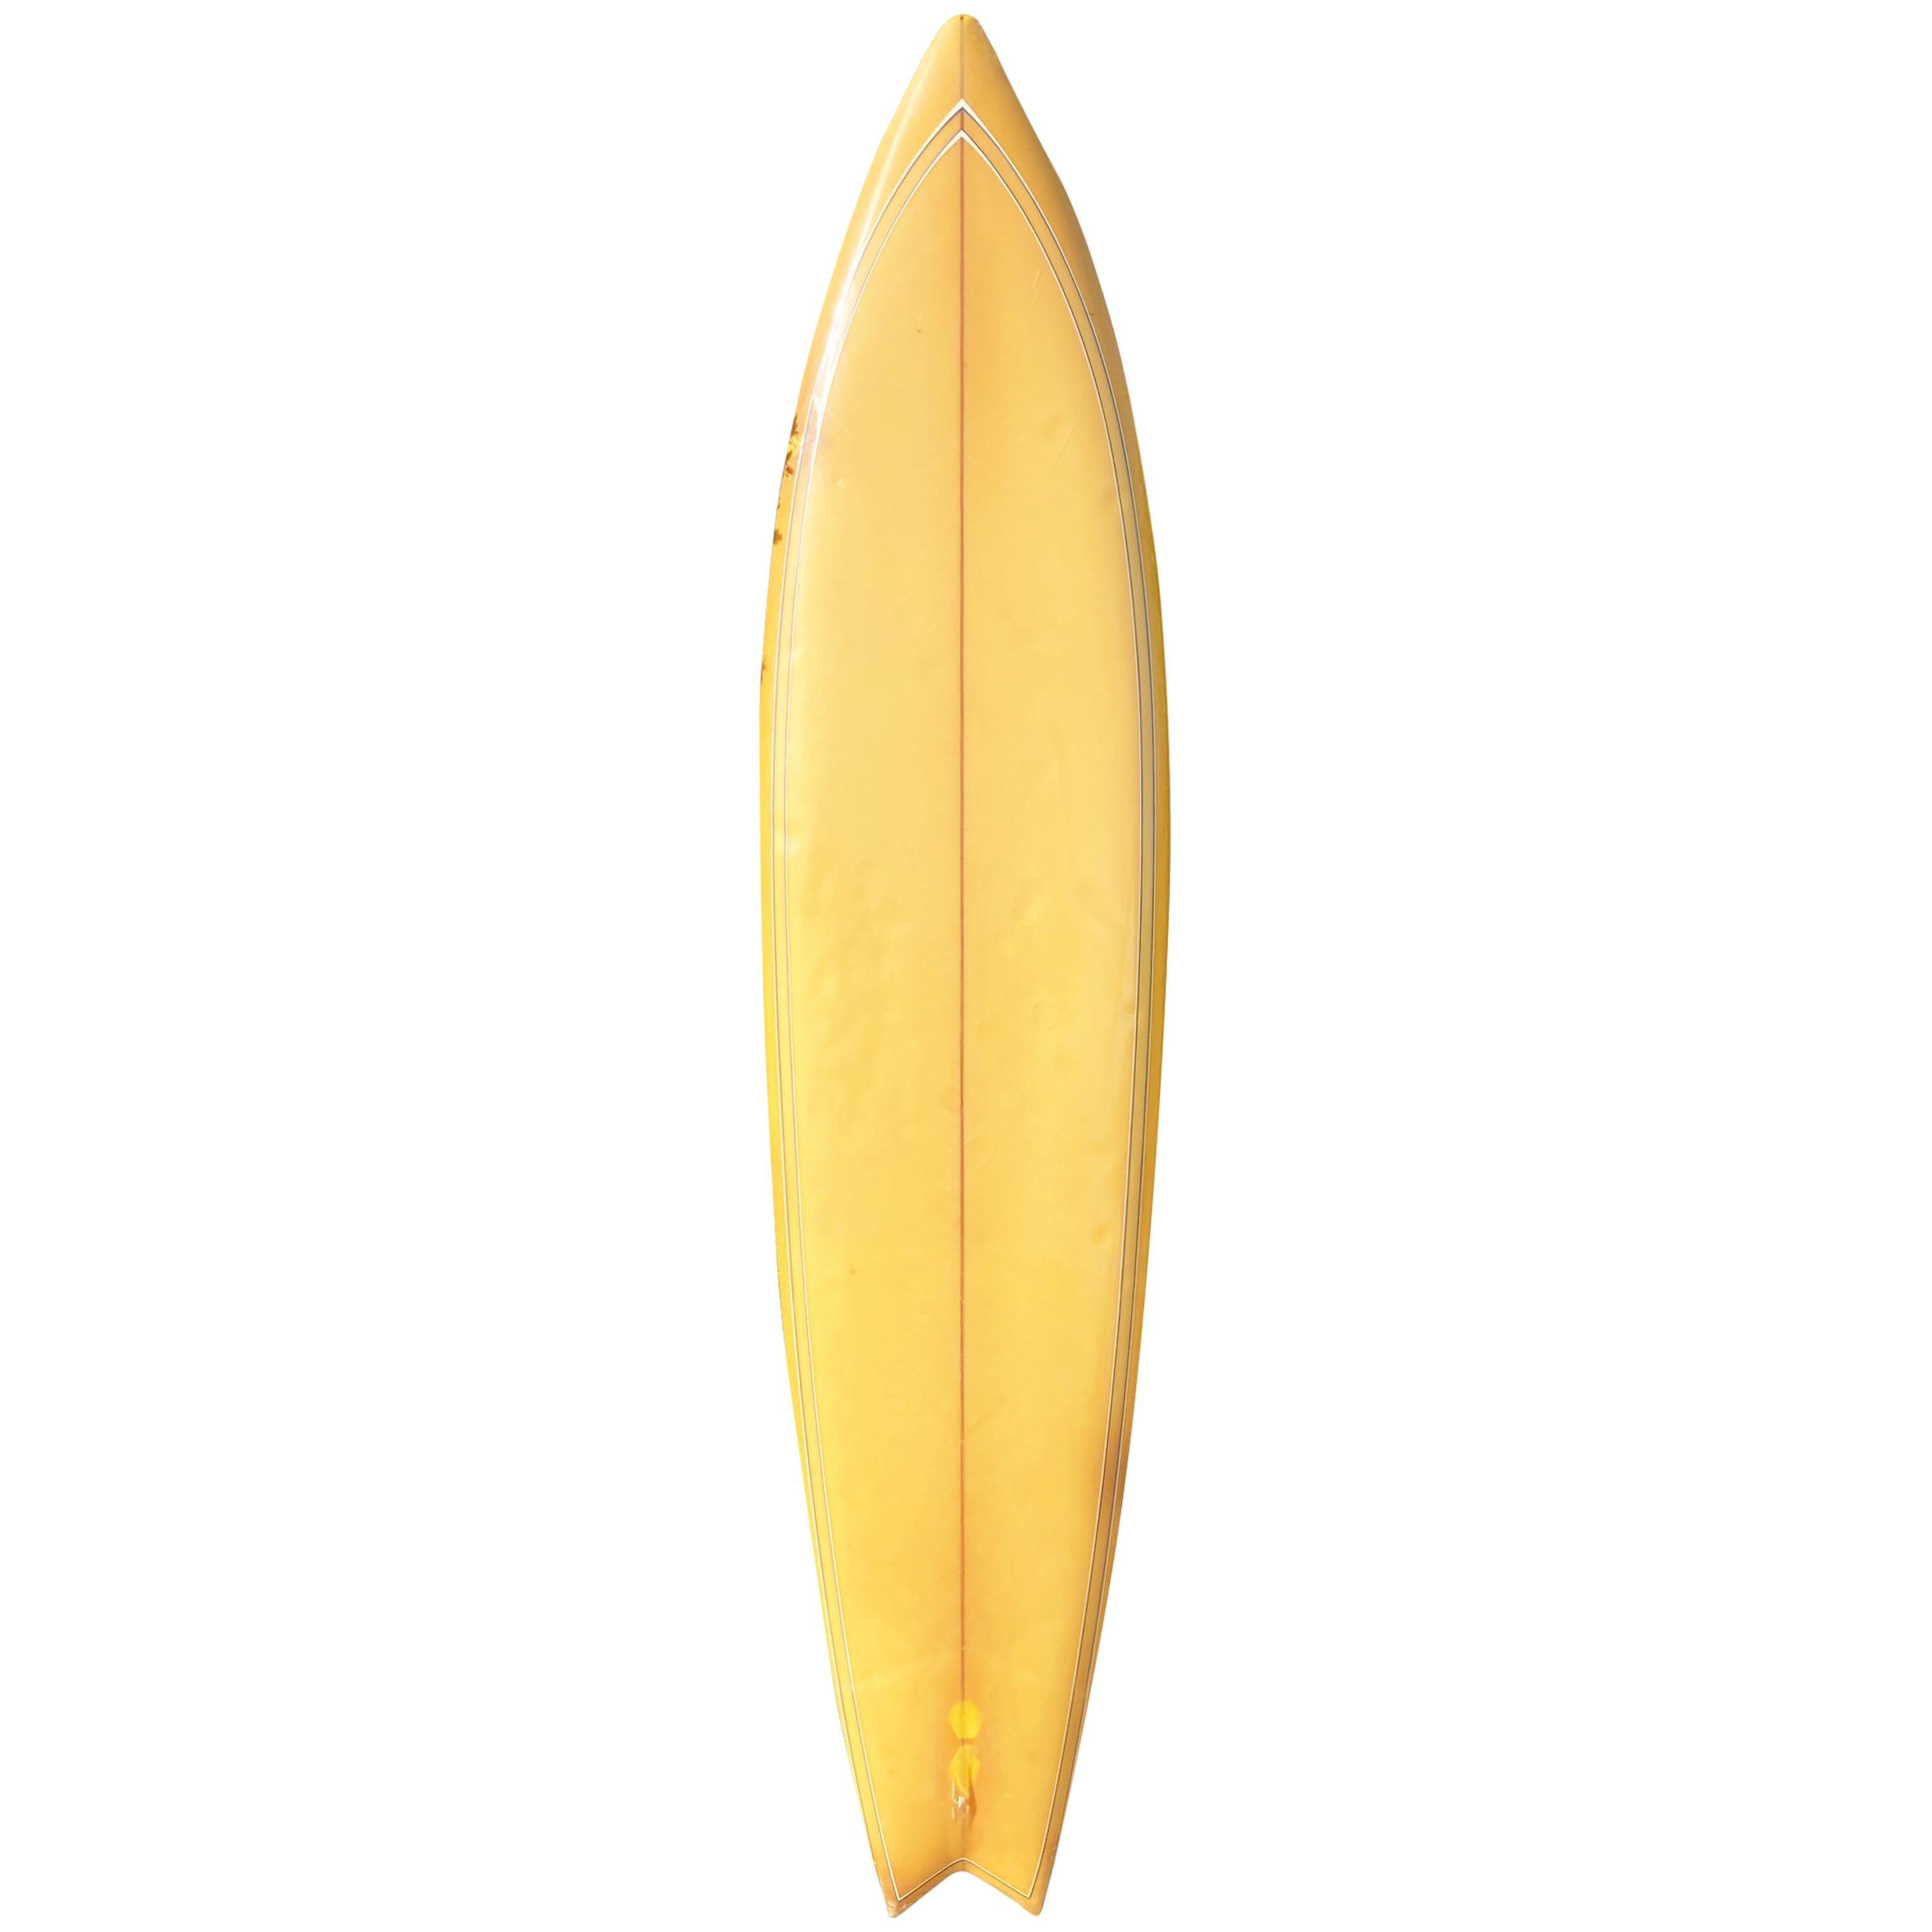 Deko Surfboard Hawaiian Islands Hawaii Inseln 100cm Kauii 